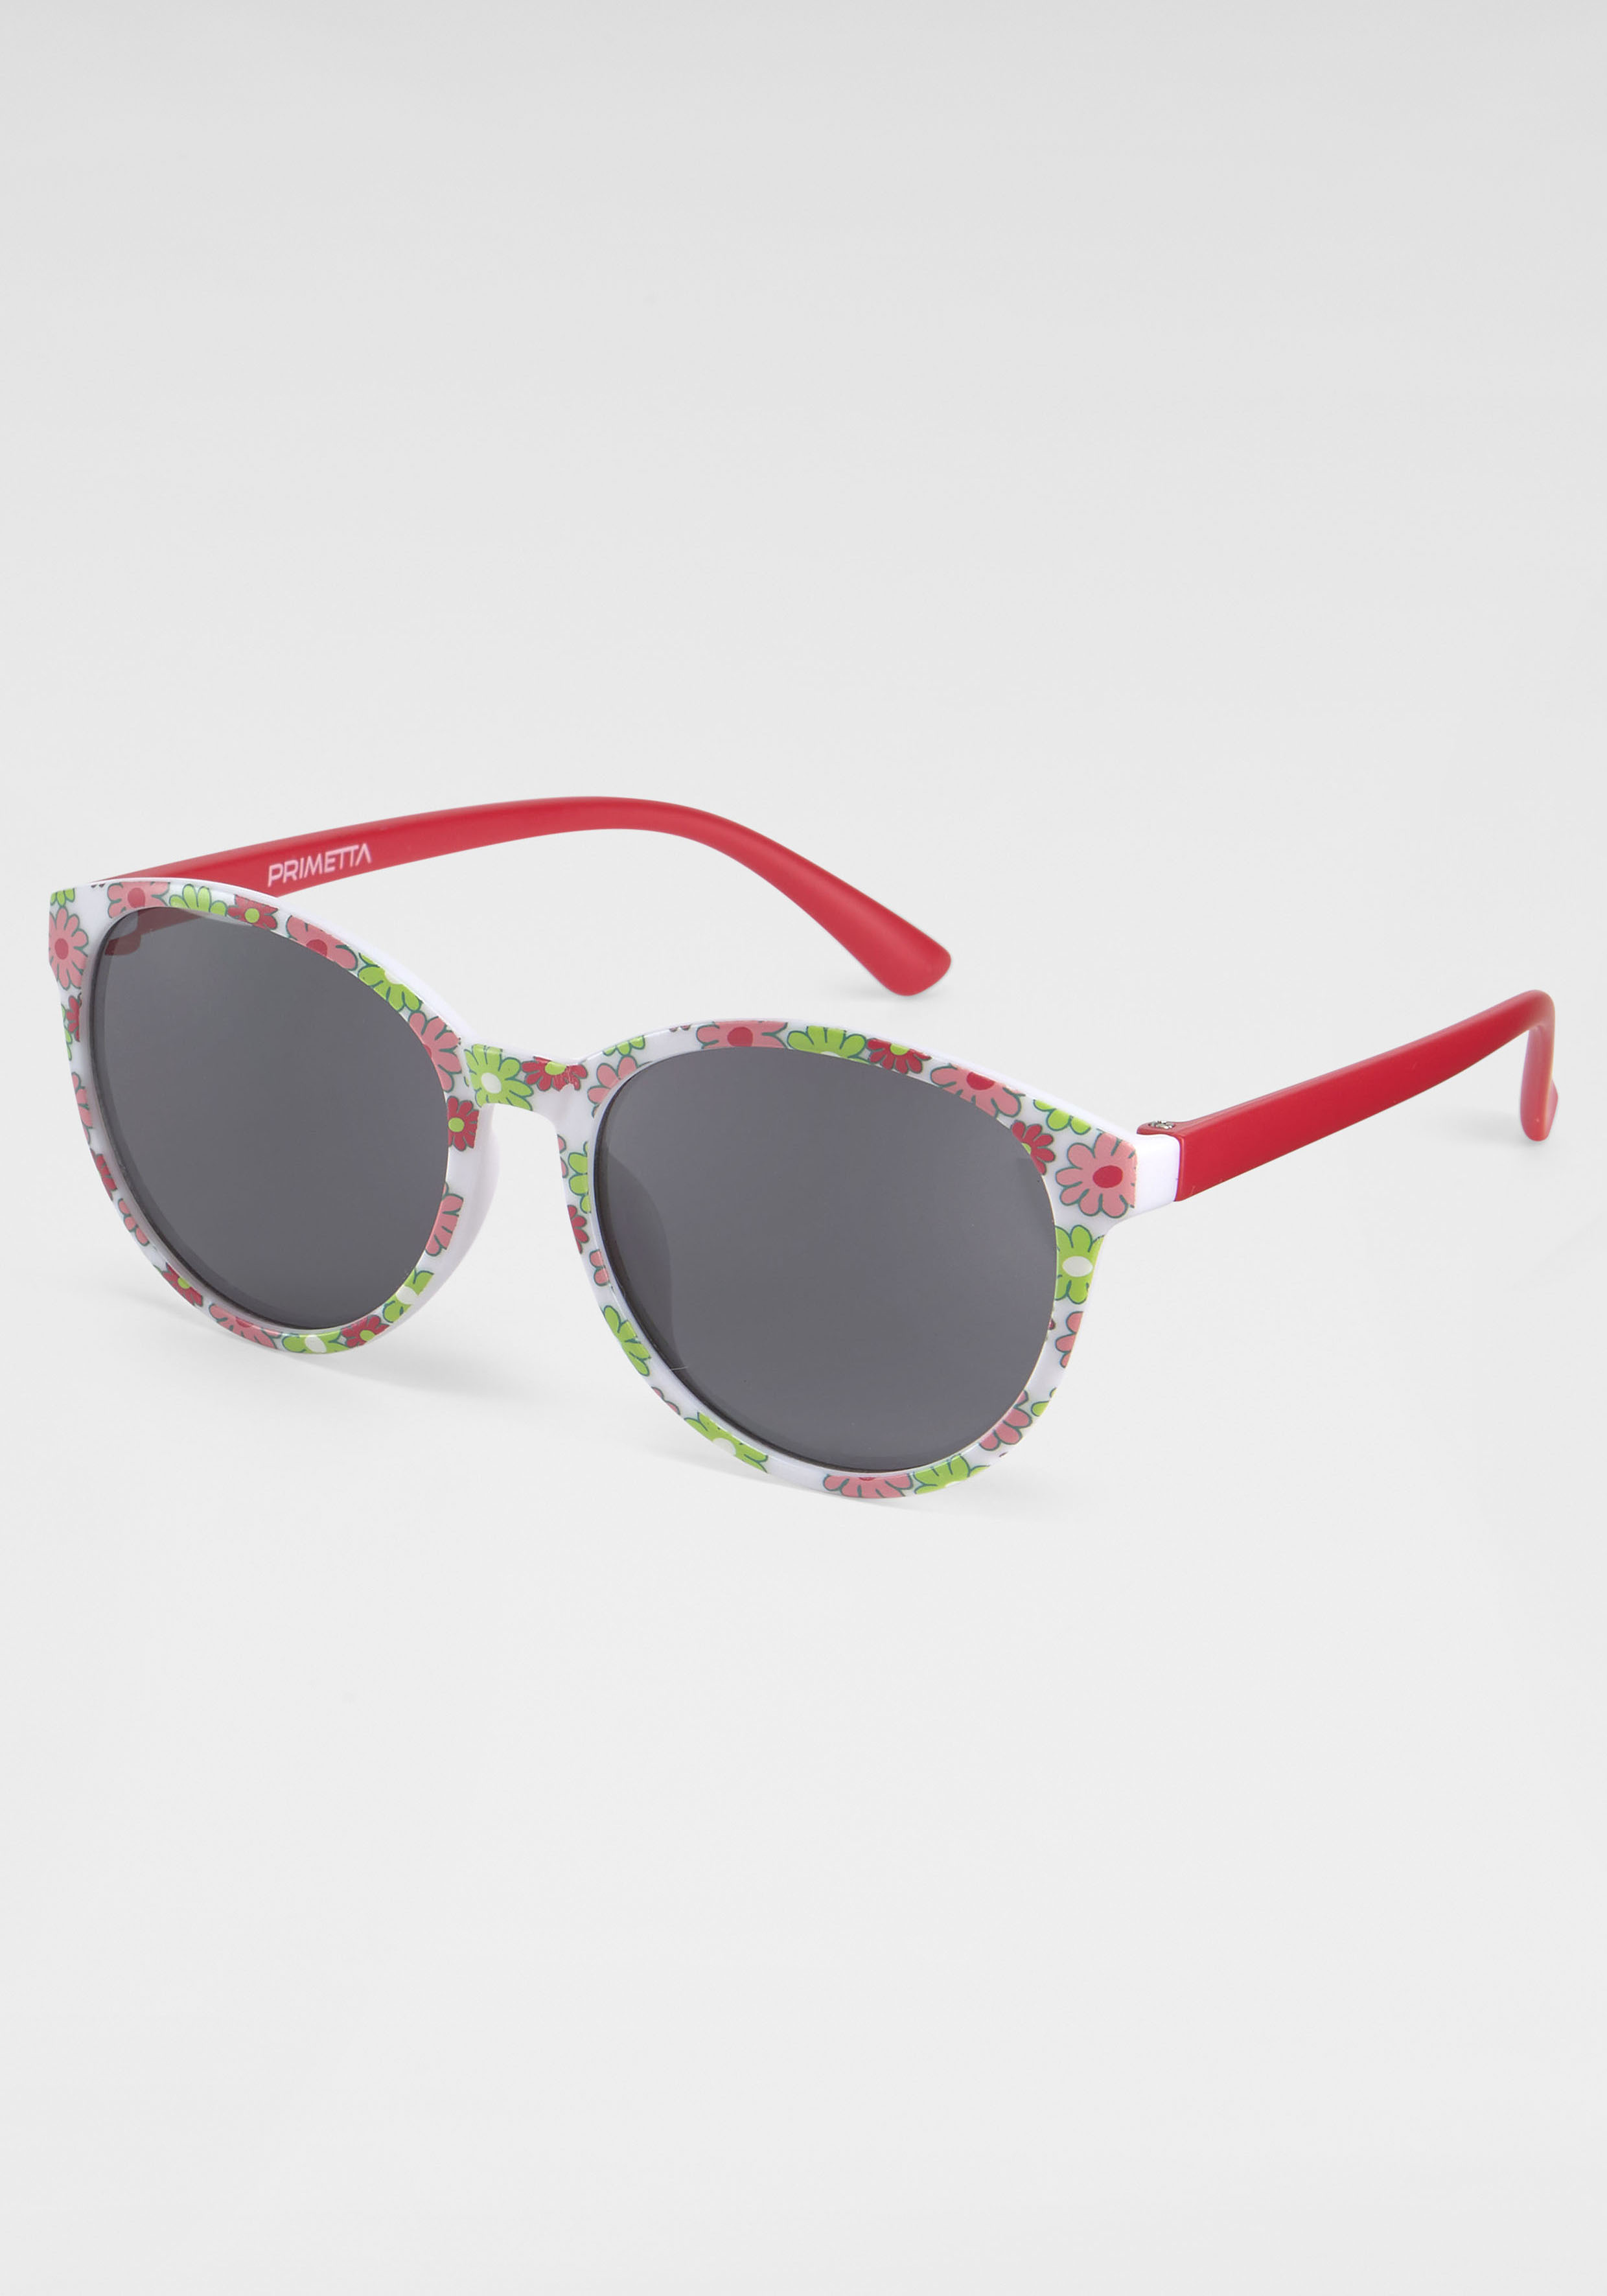 PRIMETTA Eyewear Sonnenbrille, mit bei Flamingos